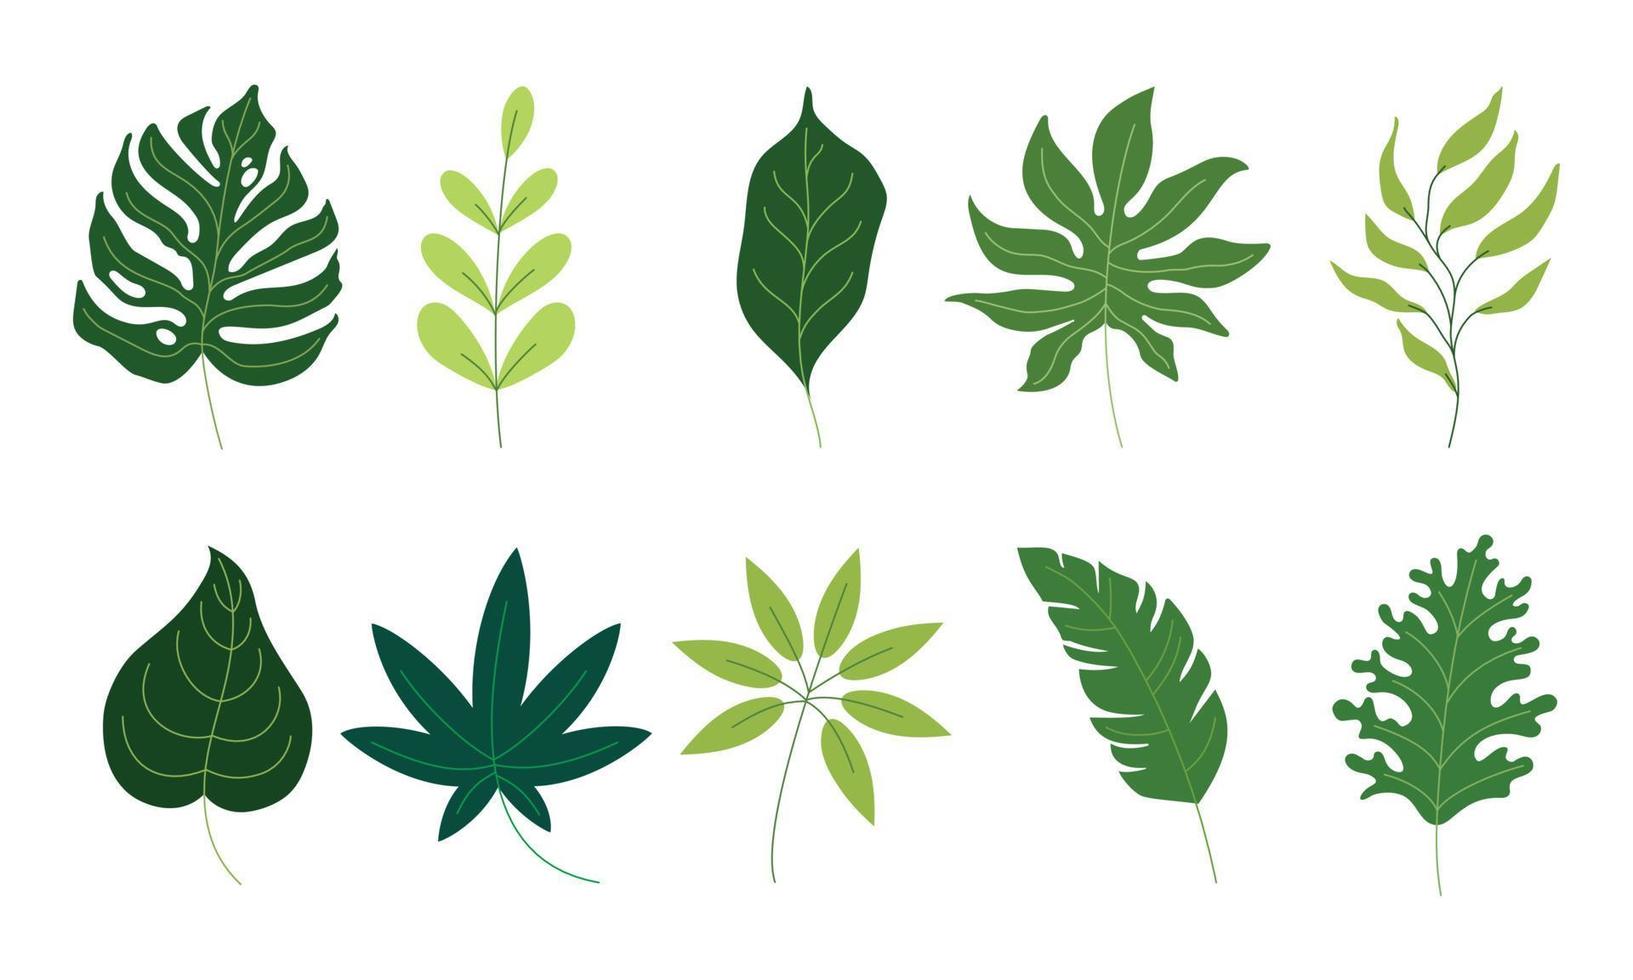 várias folhas verdes ilustração em gráficos vetoriais. a coleção de folhagem tropical isolada no branco. ilustração plana para padrão, elemento decorativo, impressão de arte, etc. vetor